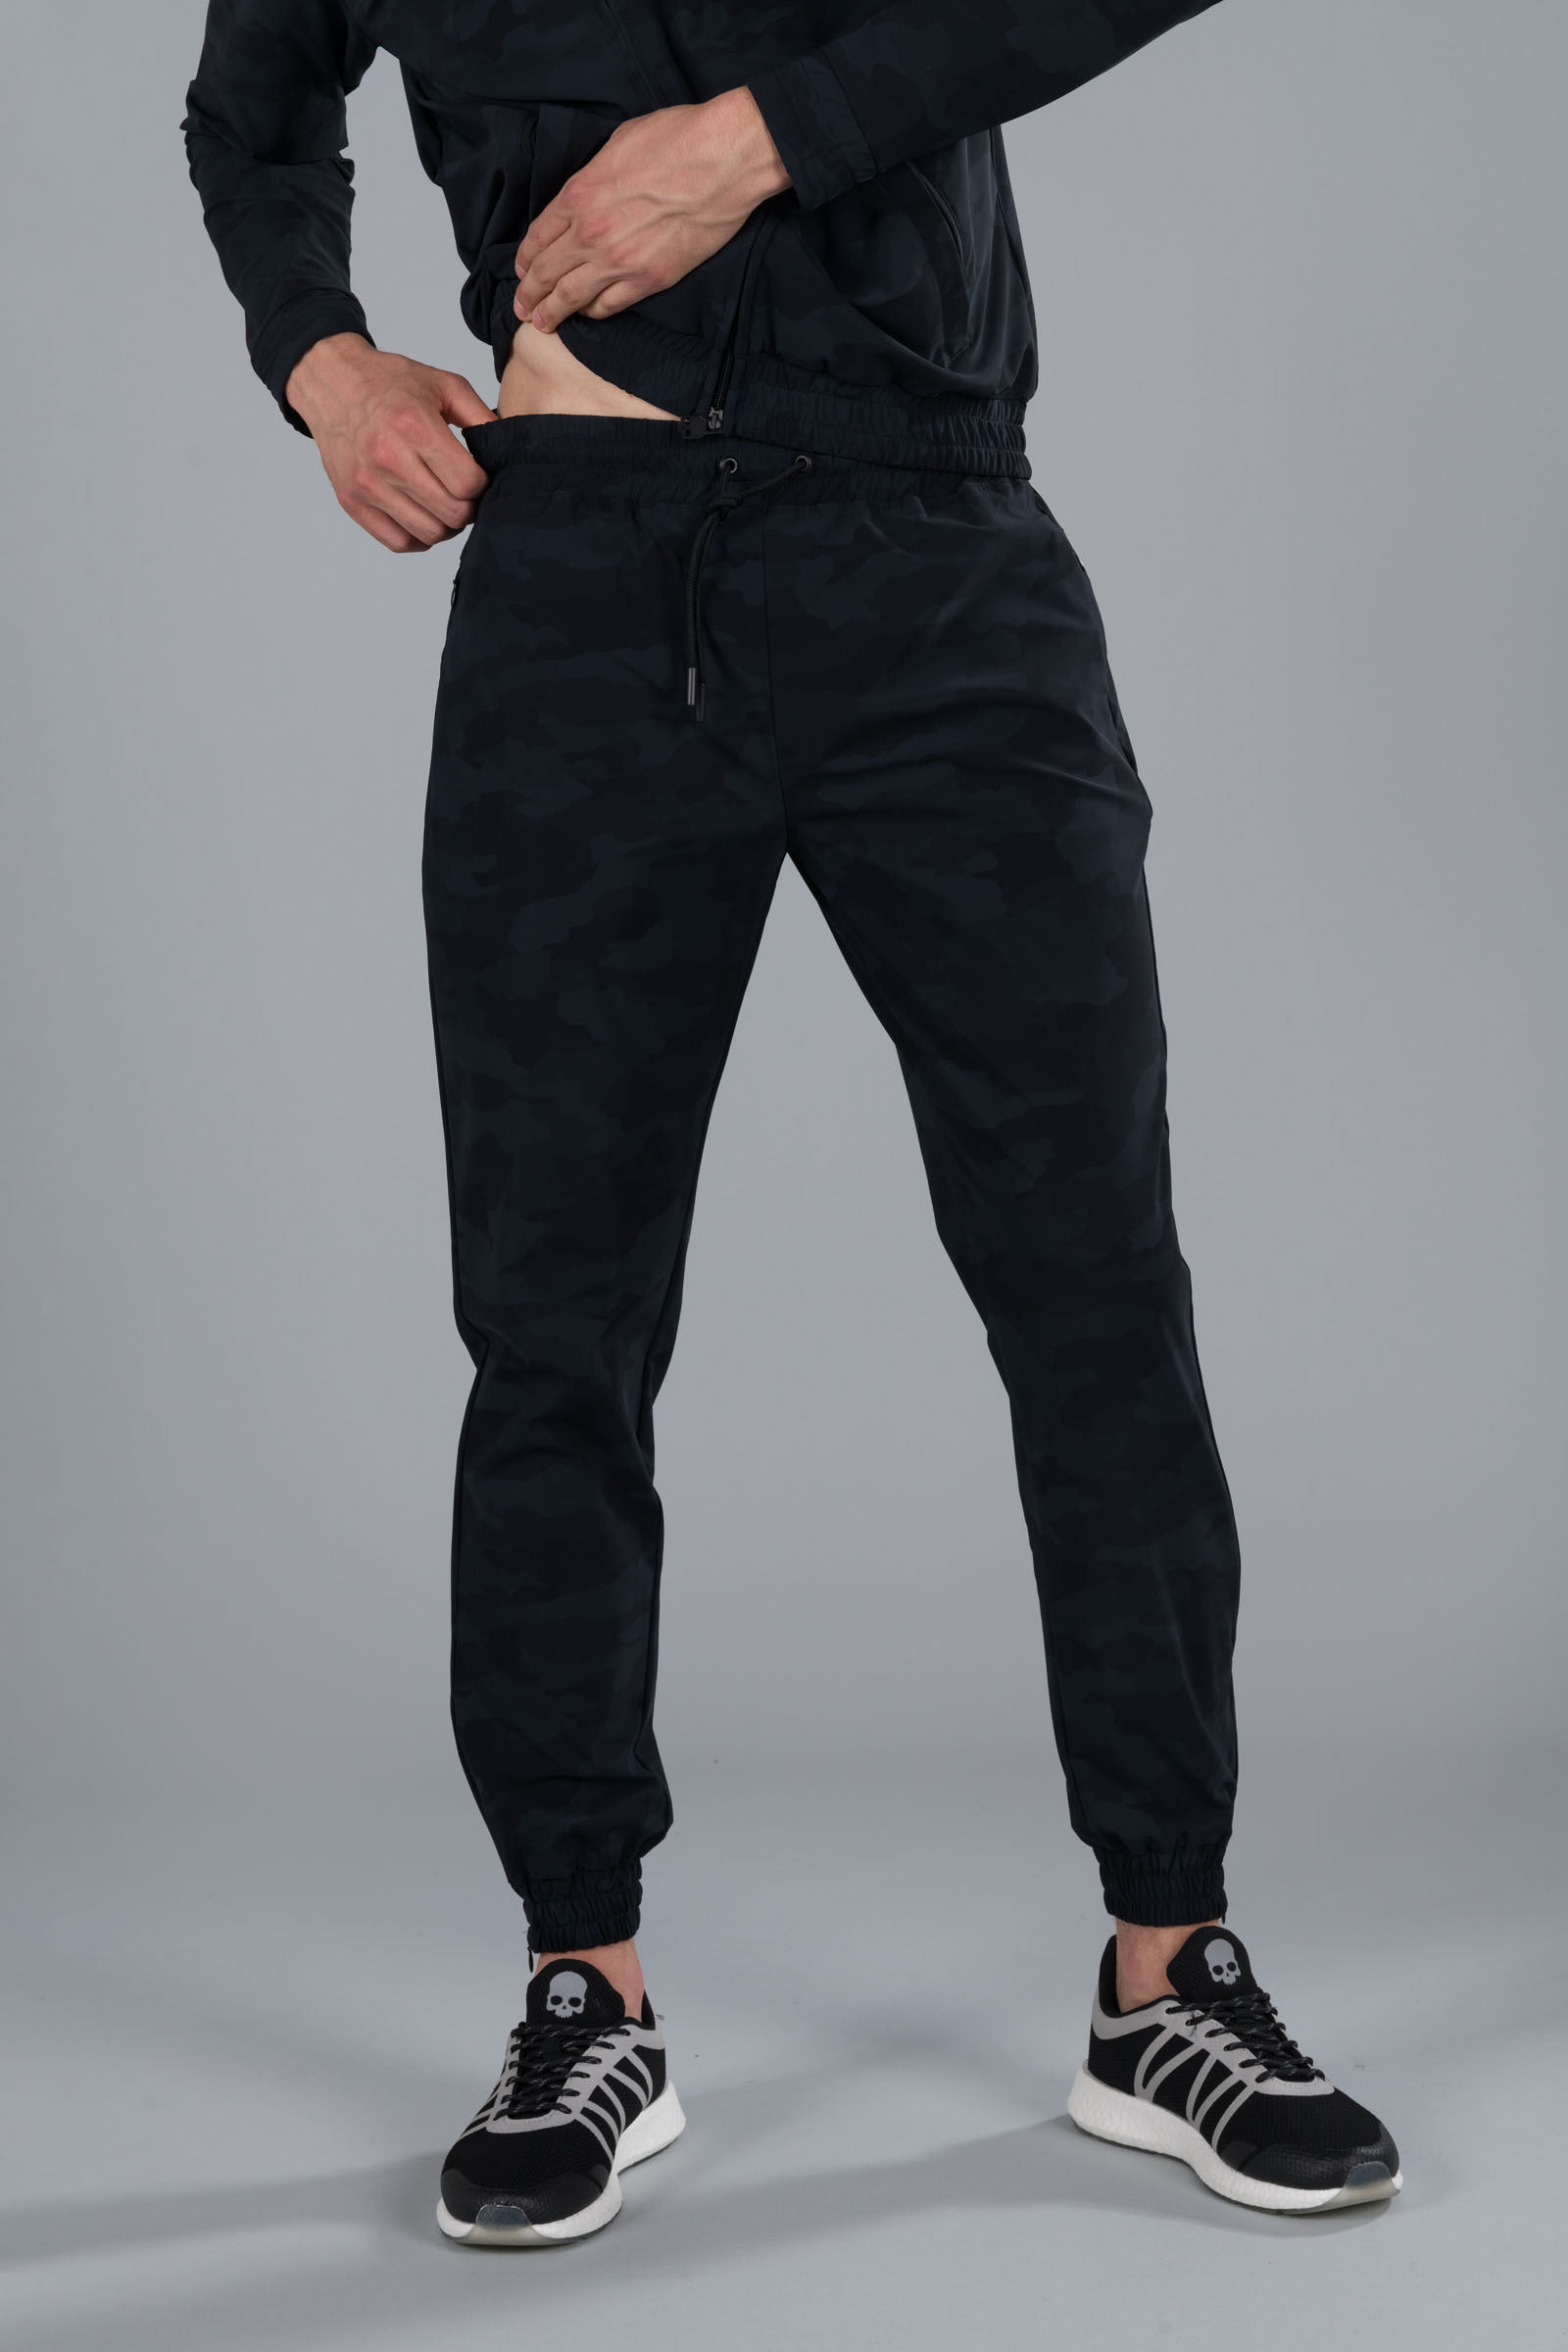 TECH PANTS - BLACK CAMOUFLAGE - Hydrogen - Luxury Sportwear